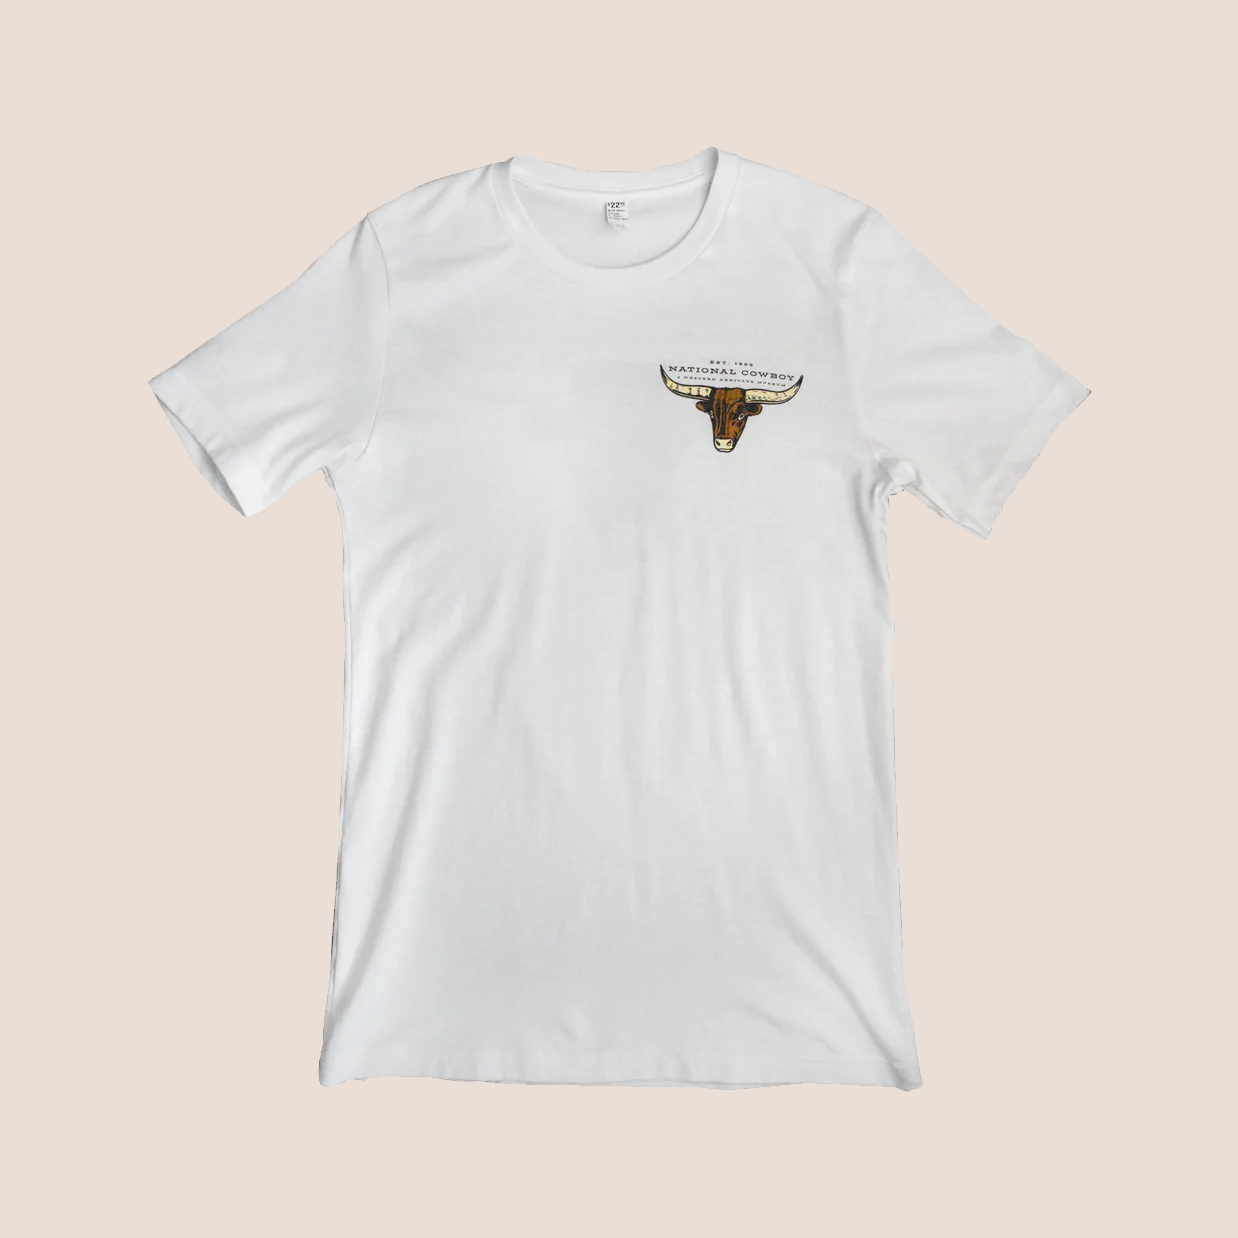 Steer Vintage White T-Shirt